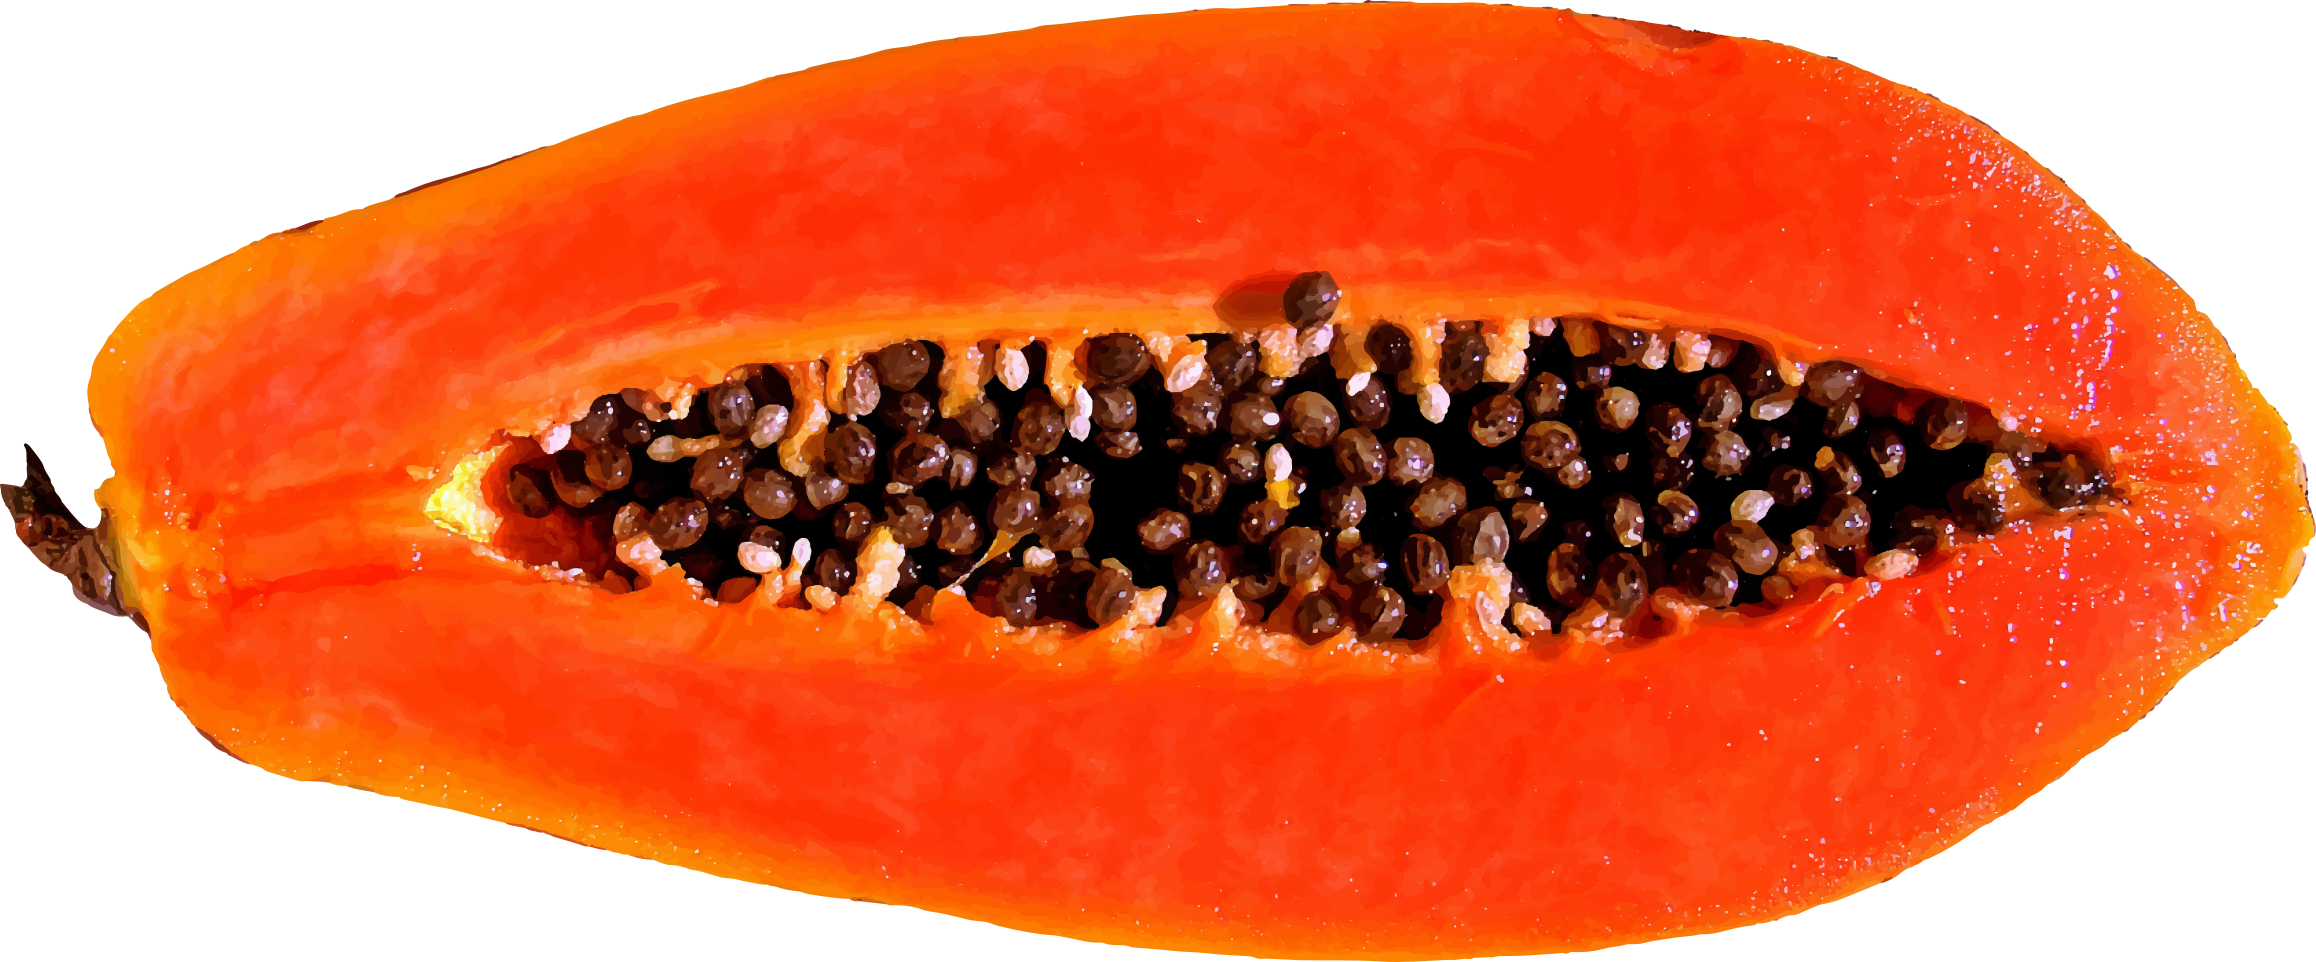 A Close Up Of A Papaya